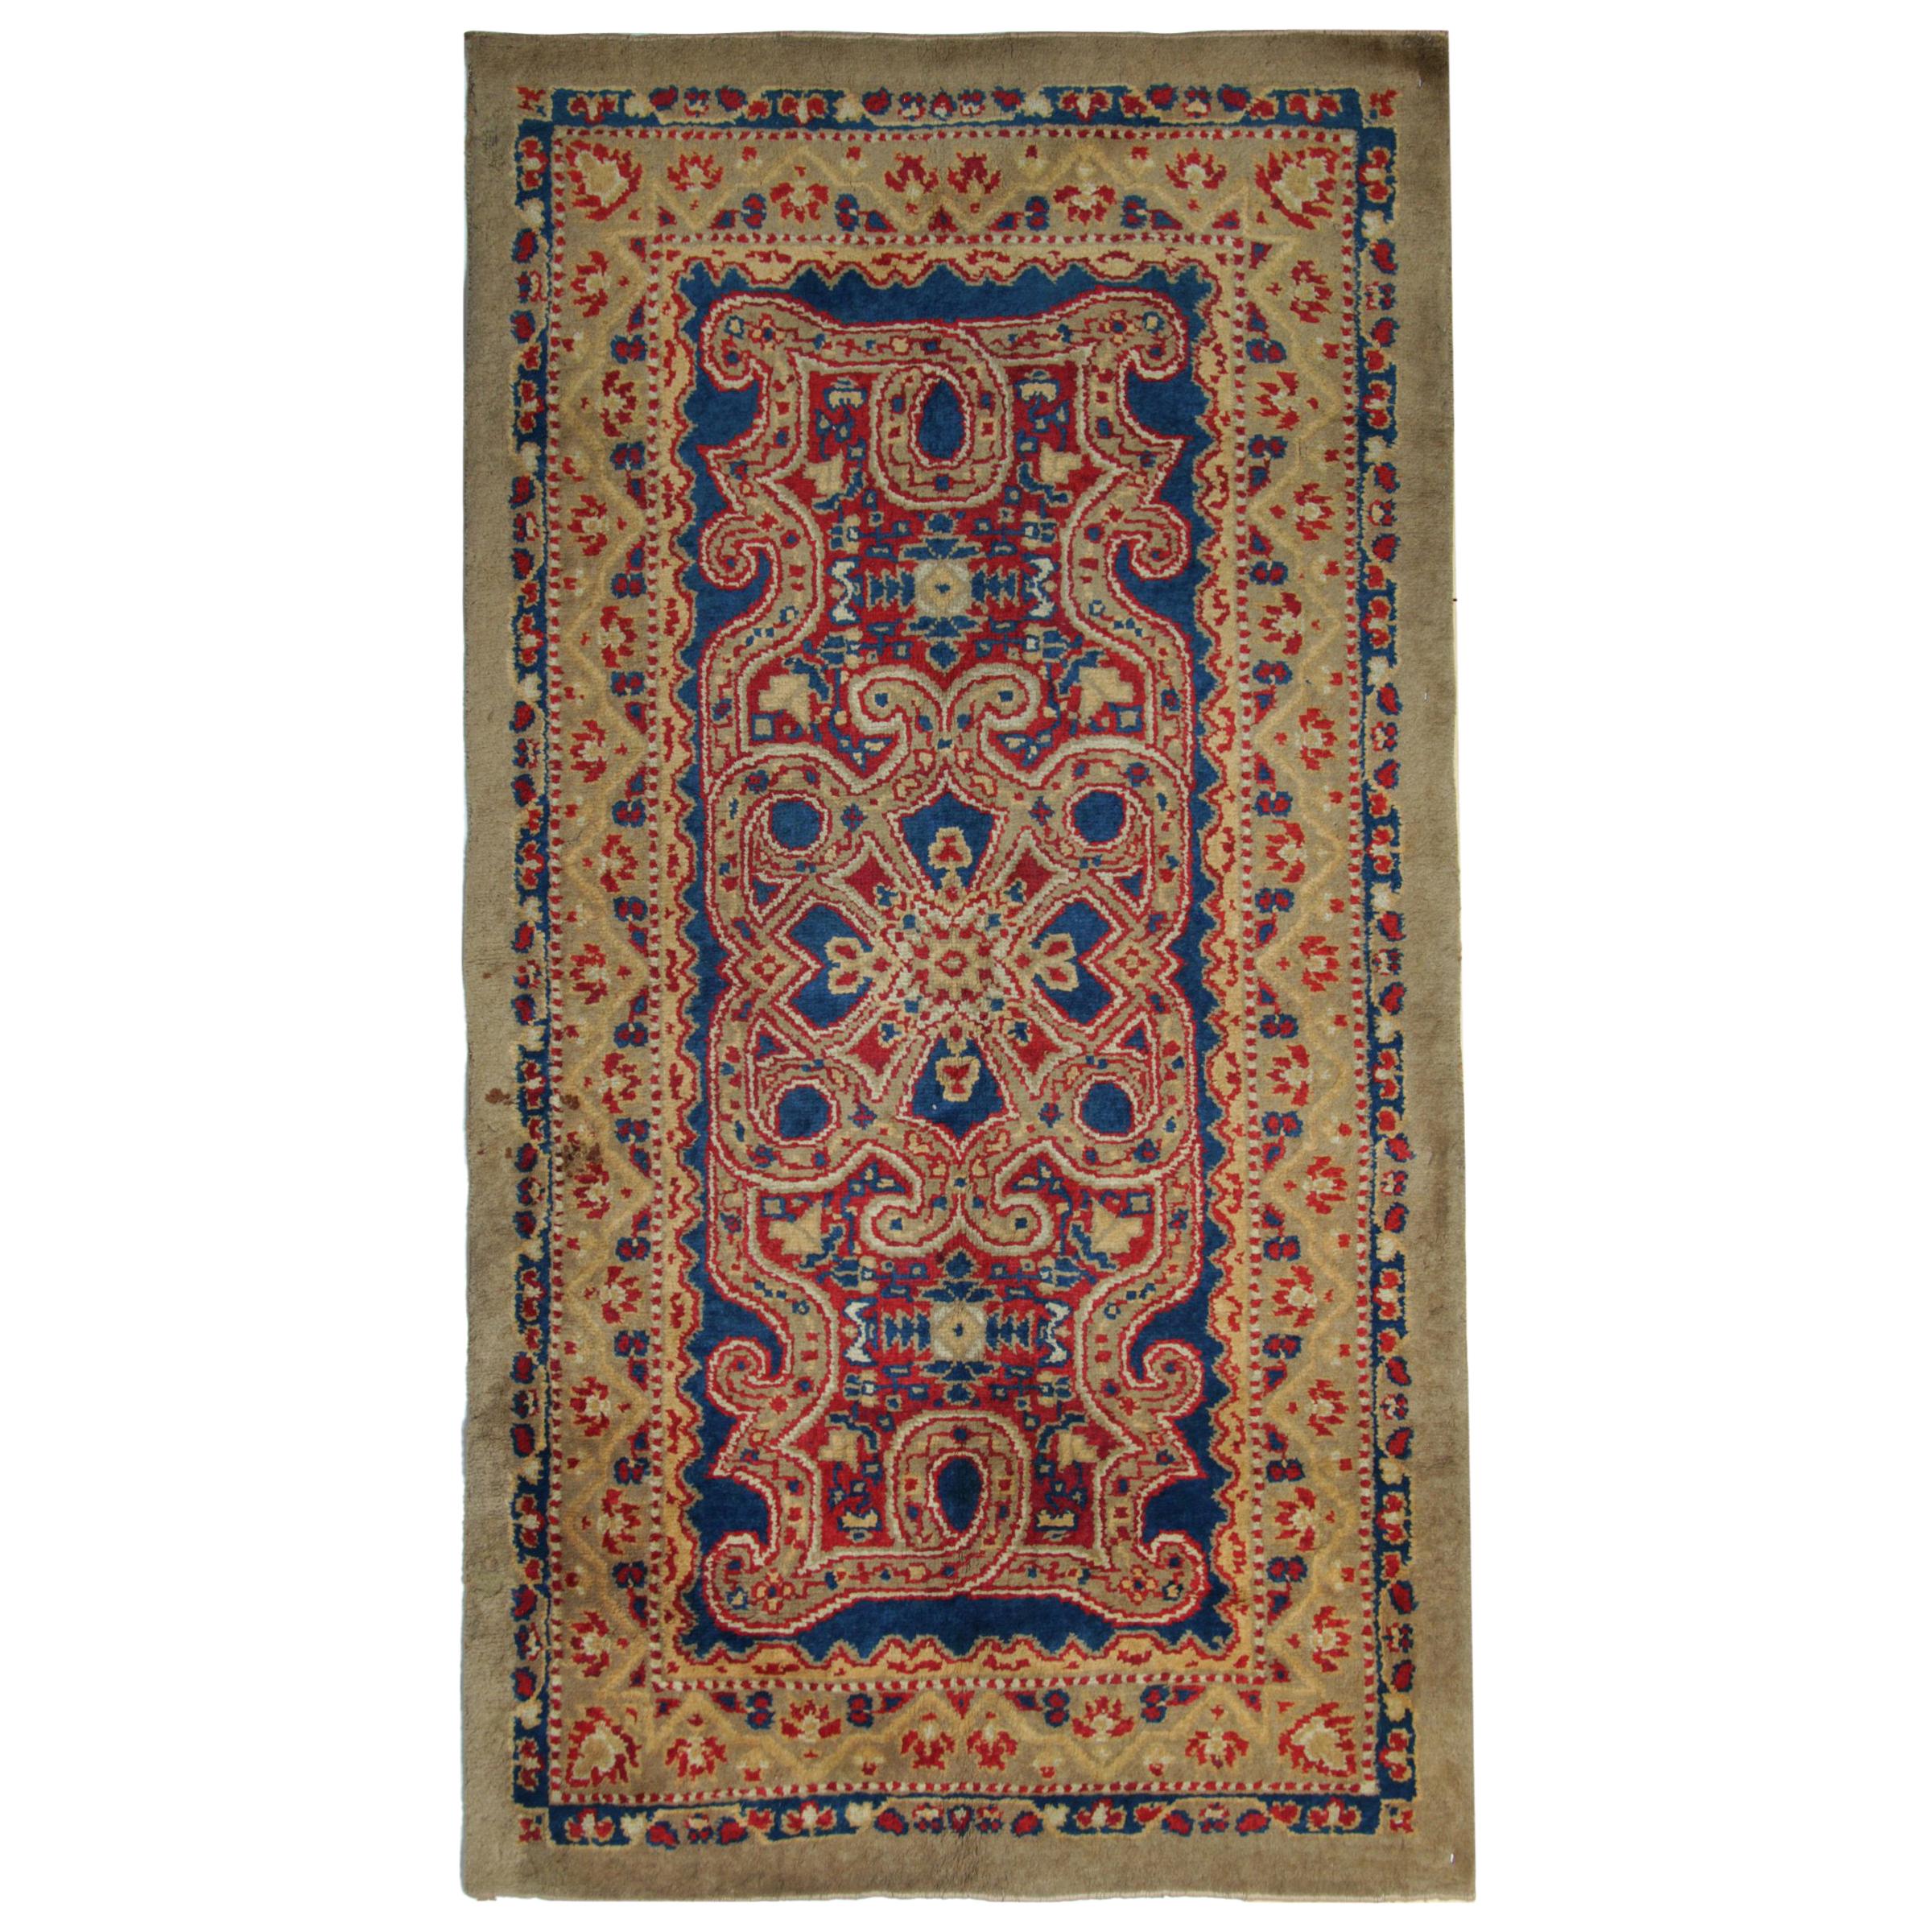 Handgefertigte Teppiche, außergewöhnliche antike britische Axminster-Teppiche, Art-déco-Teppiche